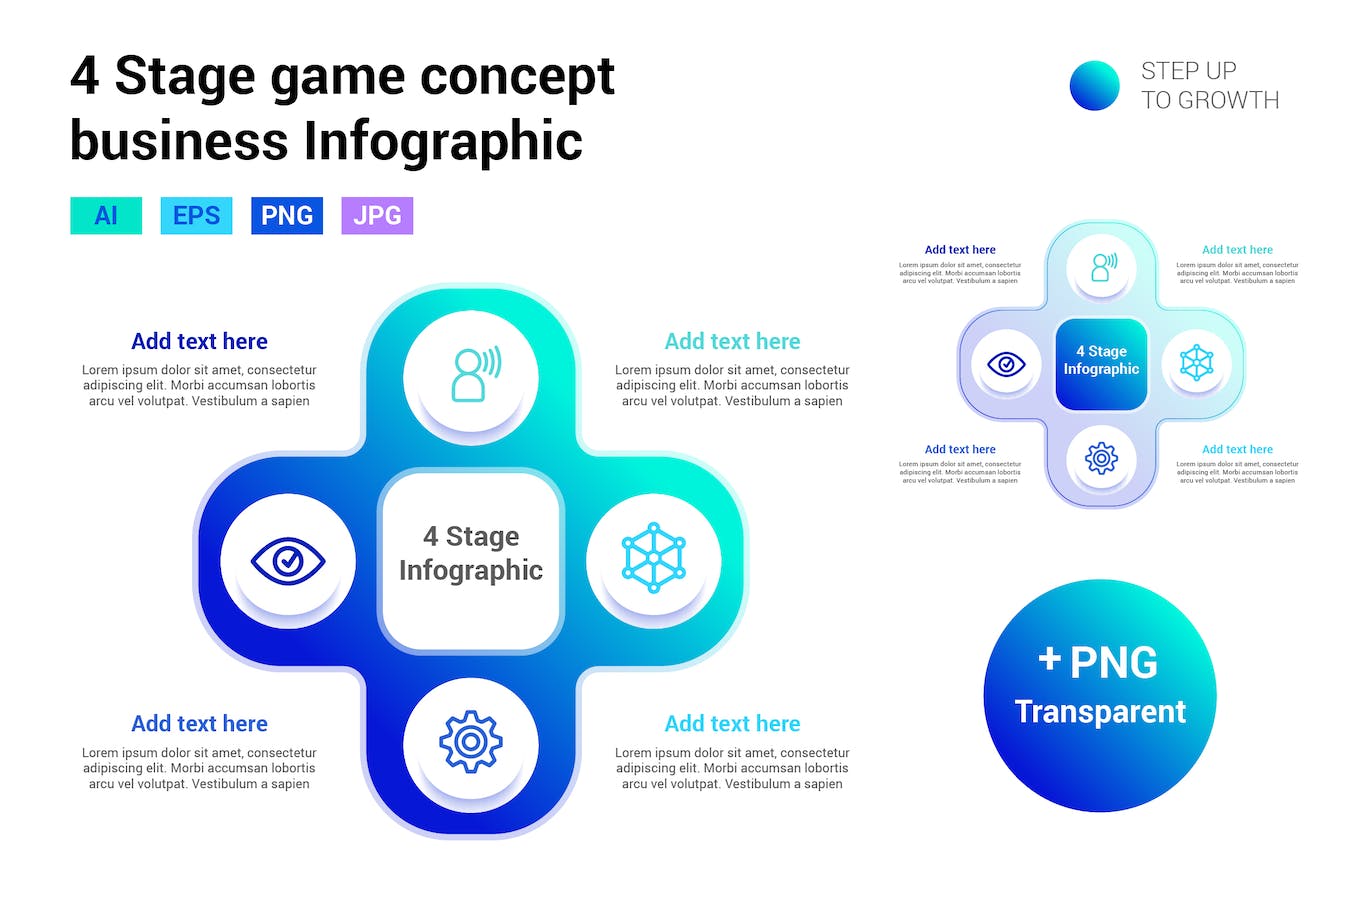 游戏方向键概念信息图表模板 4 Stage game concept infographic 幻灯图表 第1张